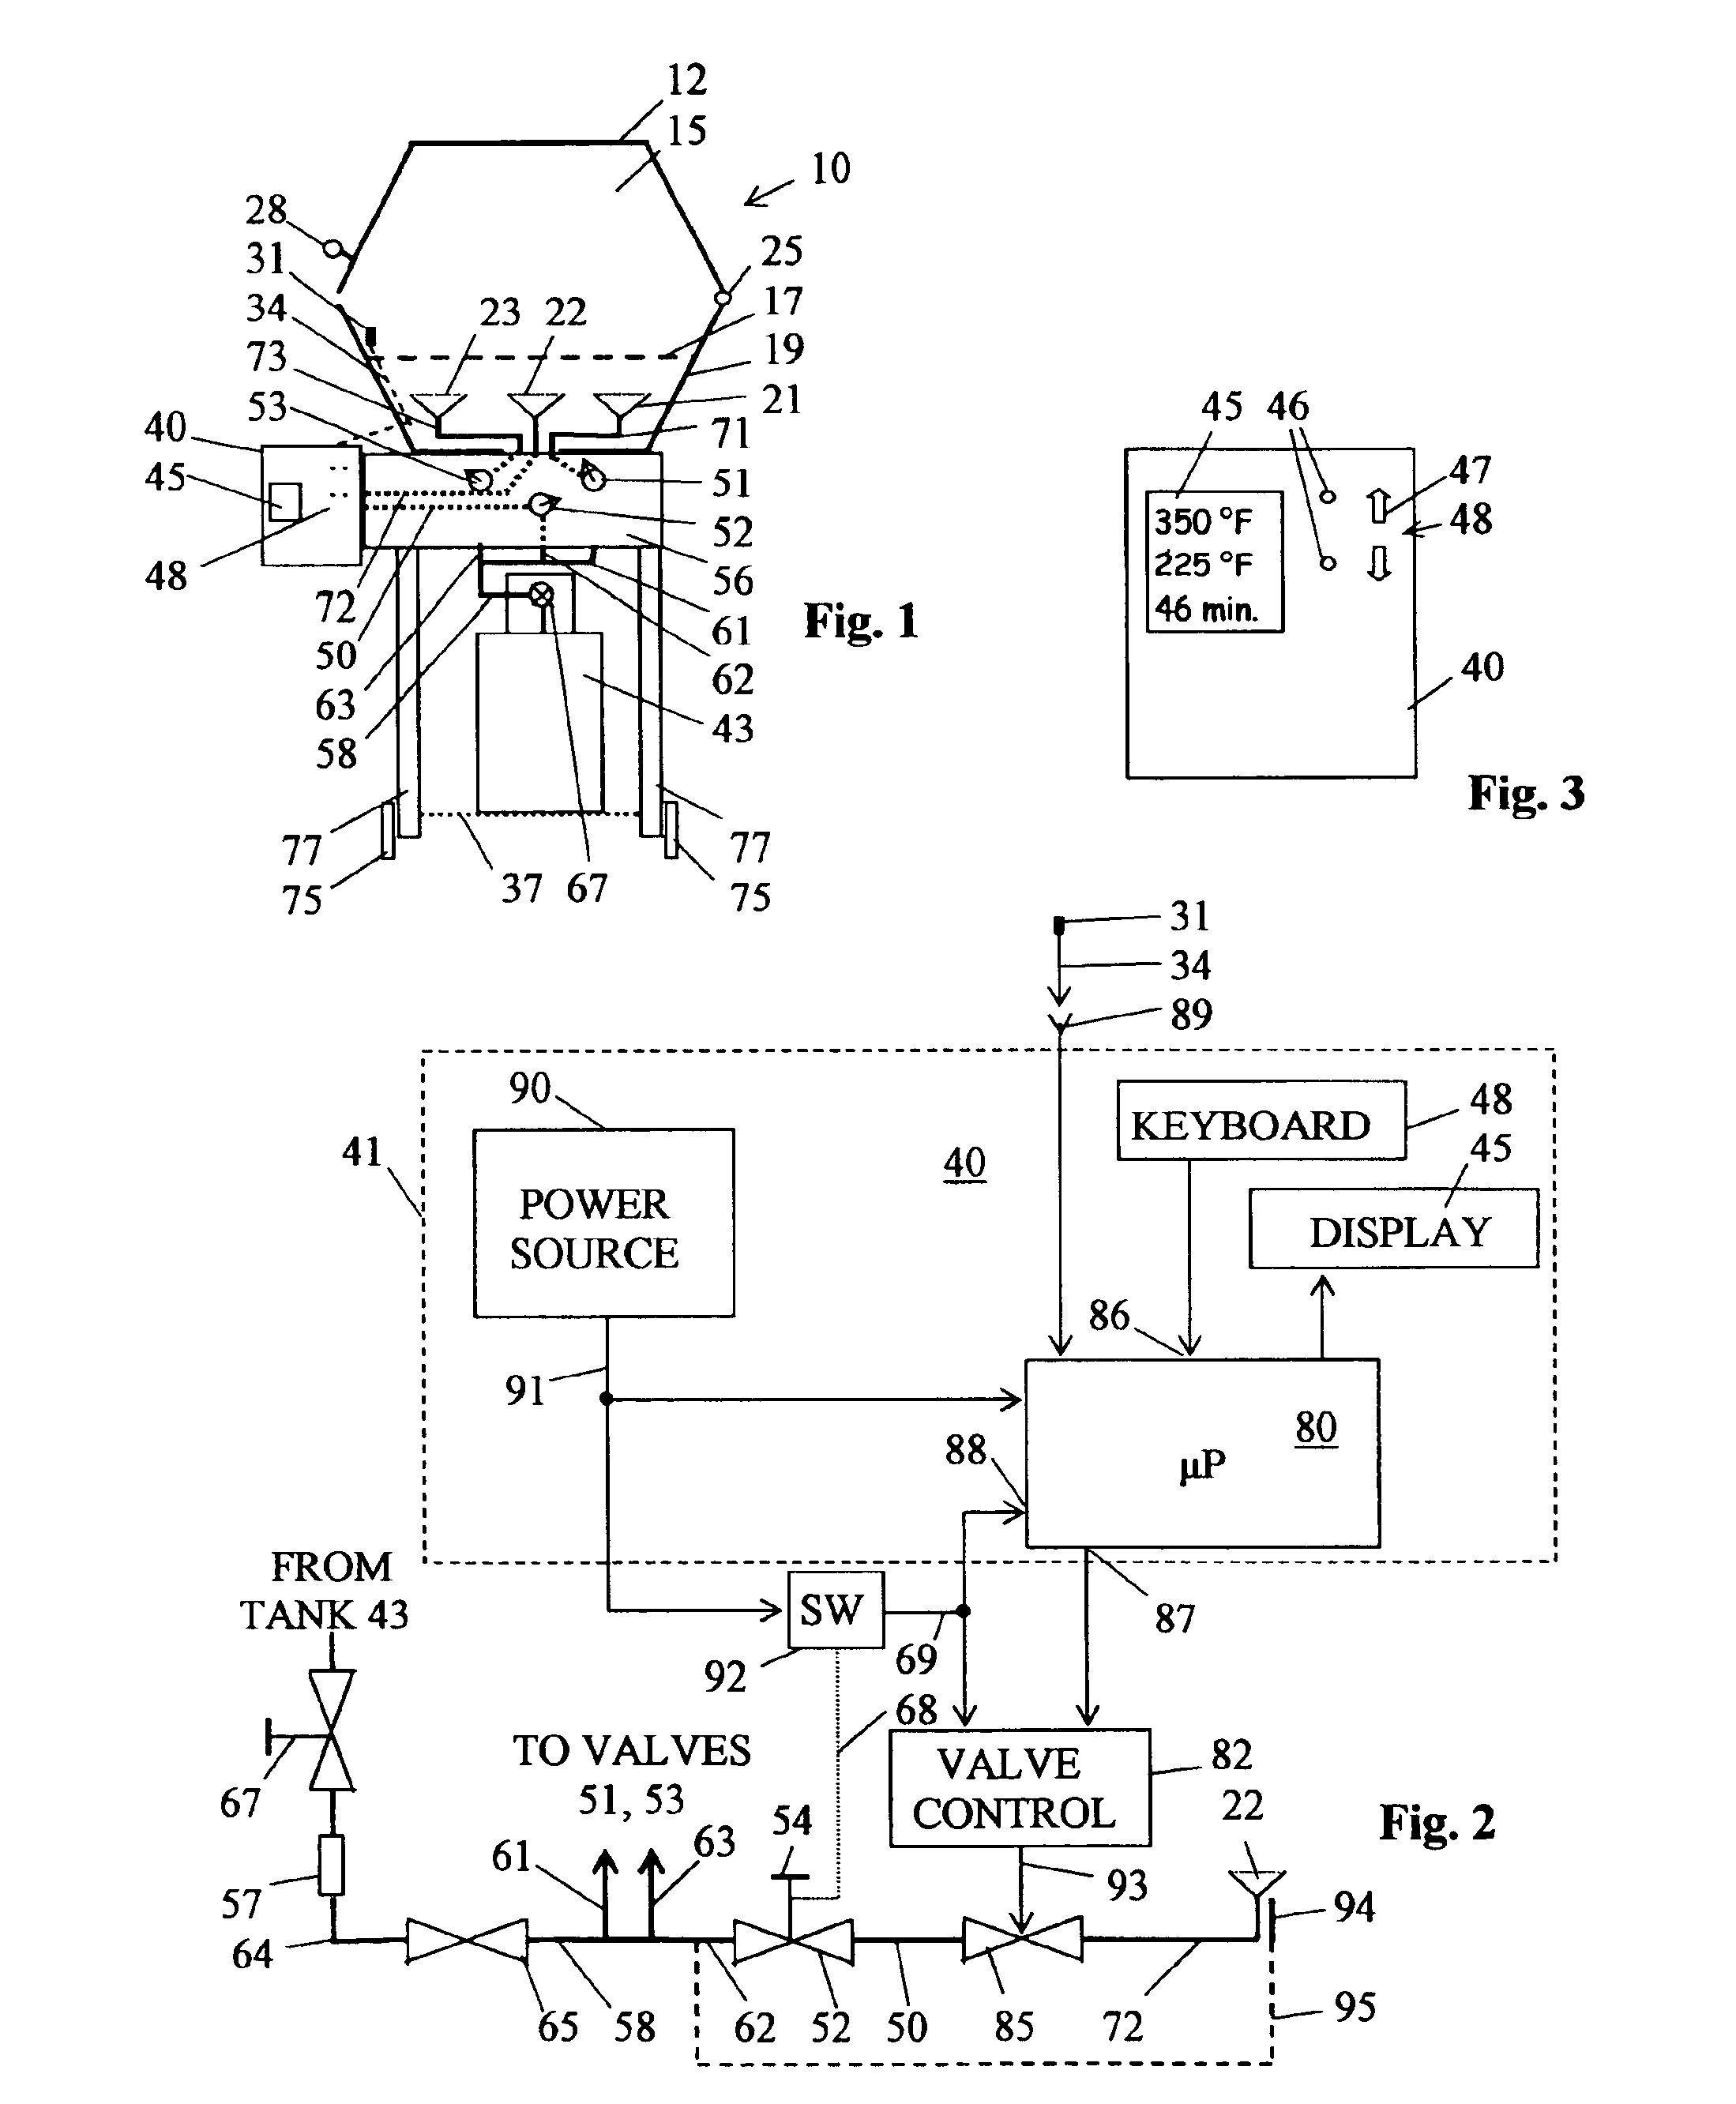 Temperature controlled burner apparatus